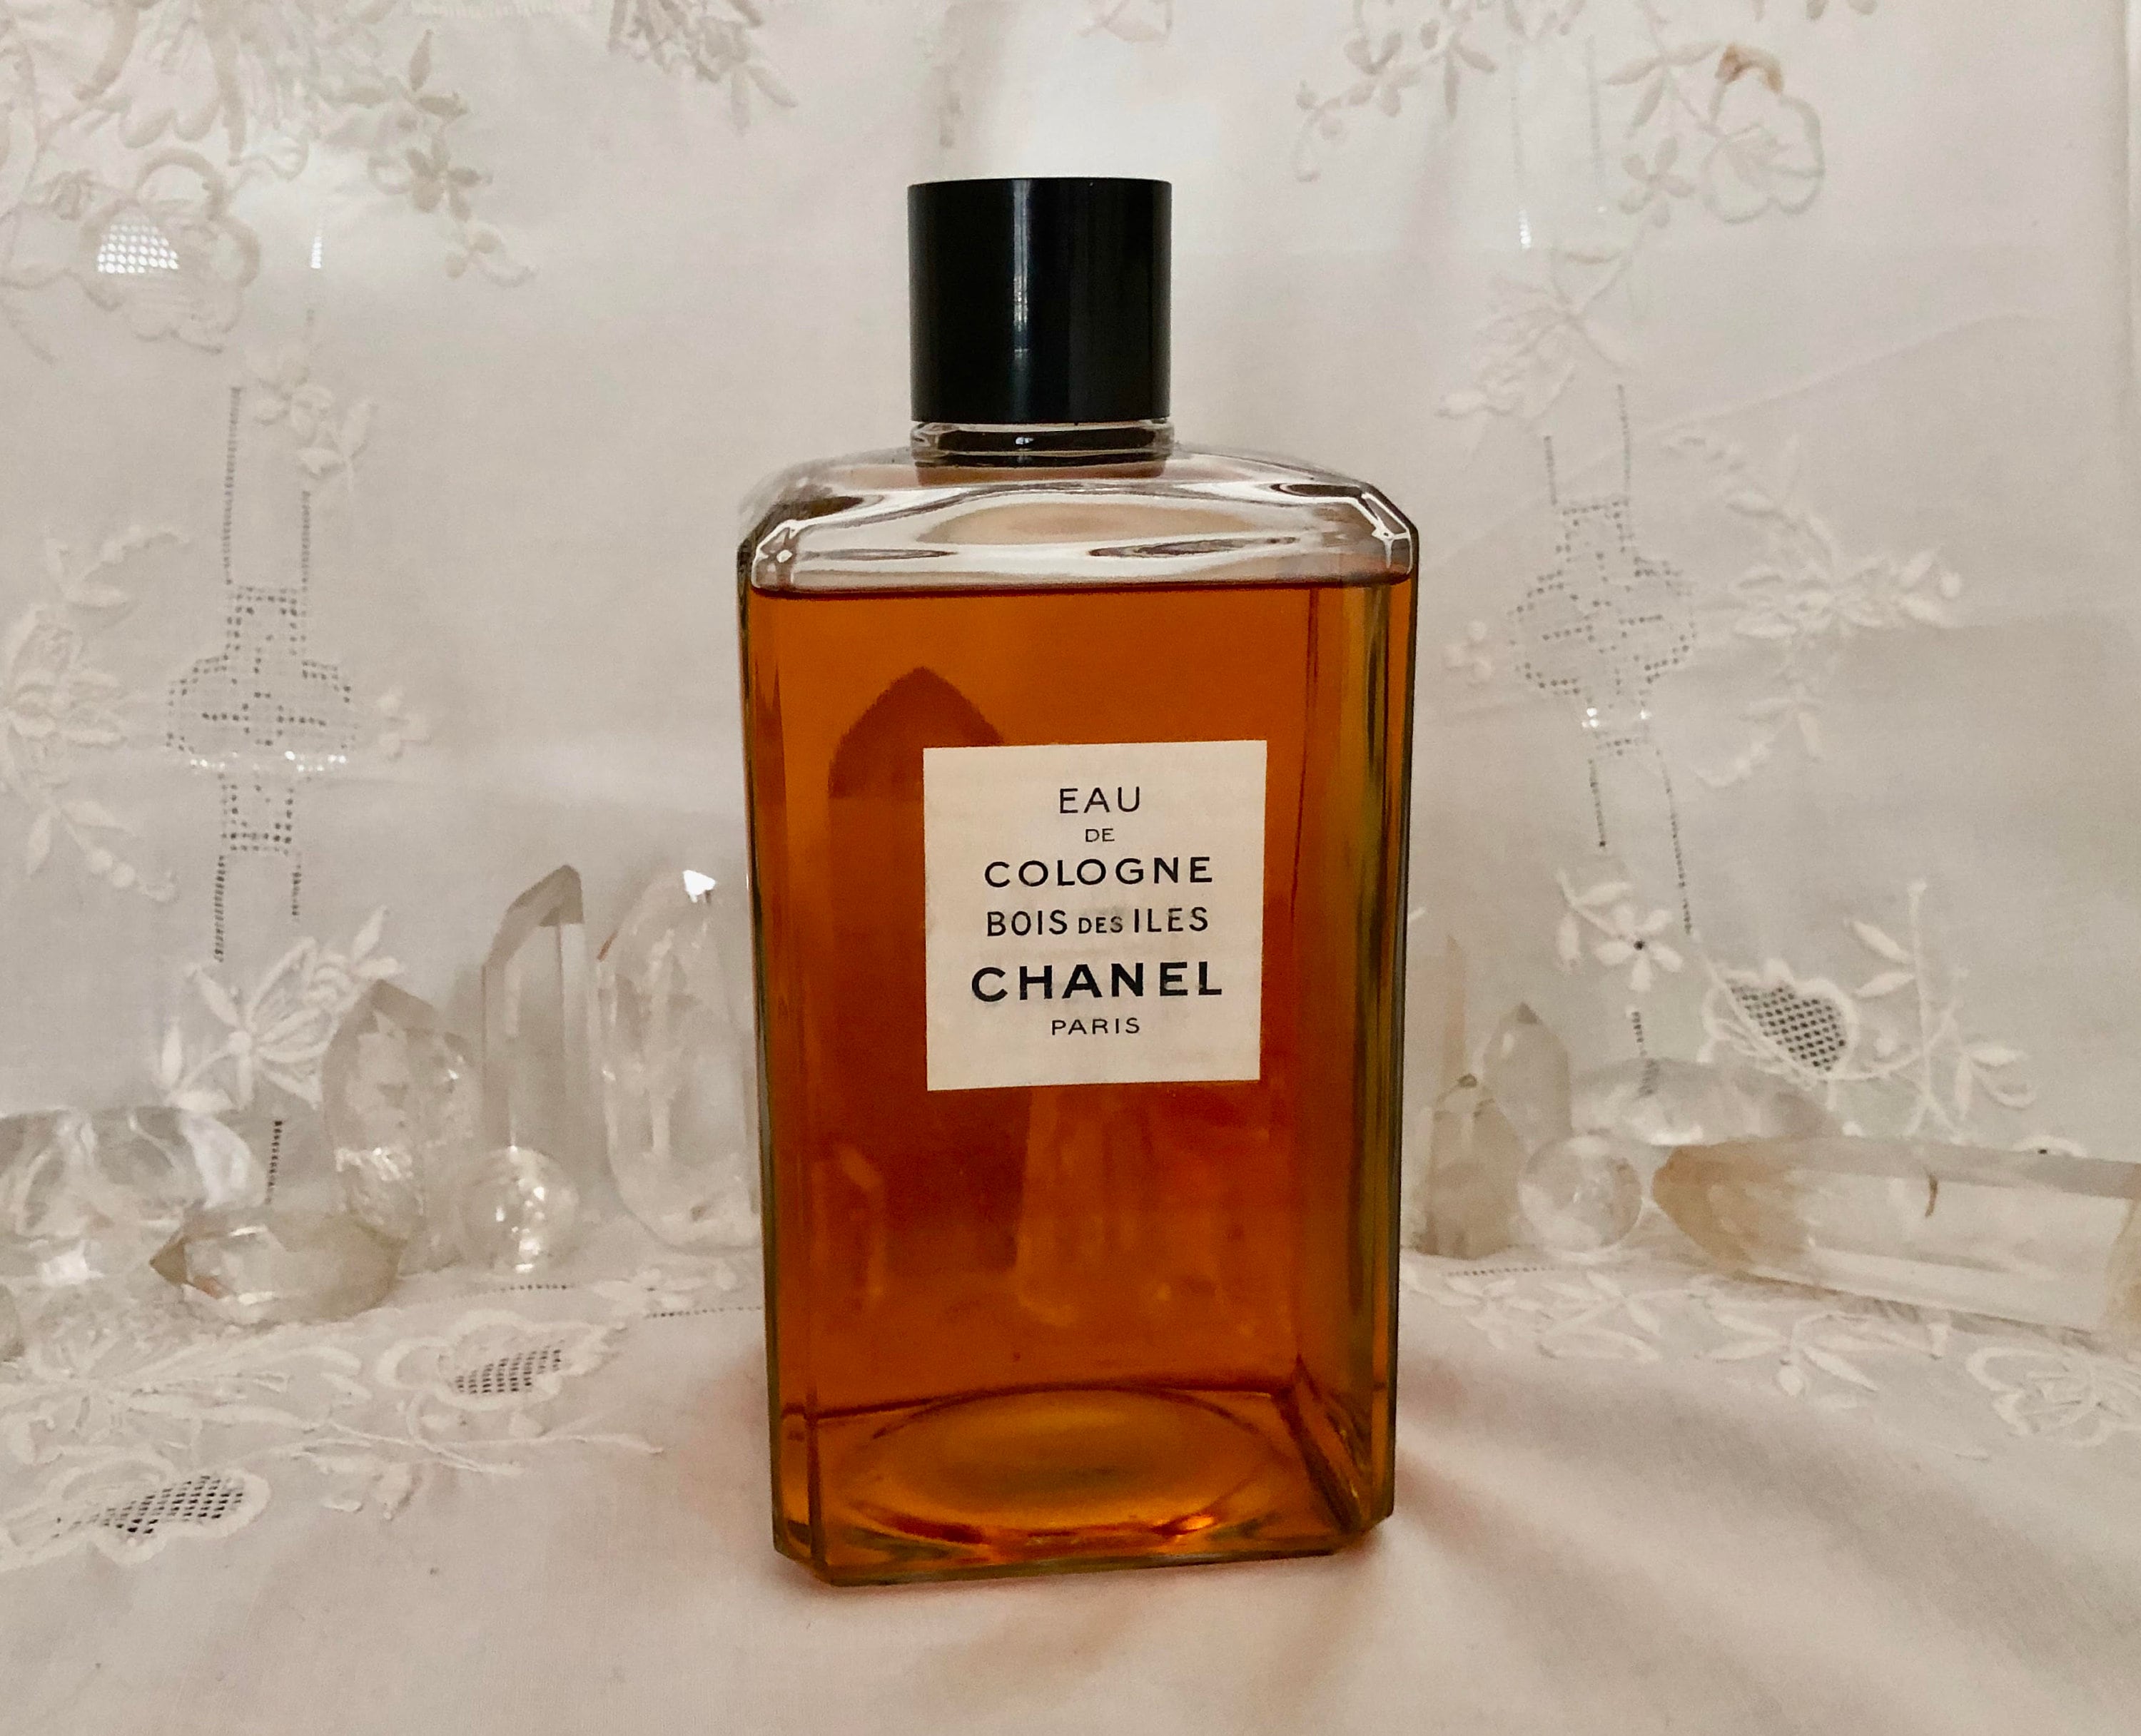 Chanel Egoiste vs. Chanel Bois des Iles cologne/fragrance review 